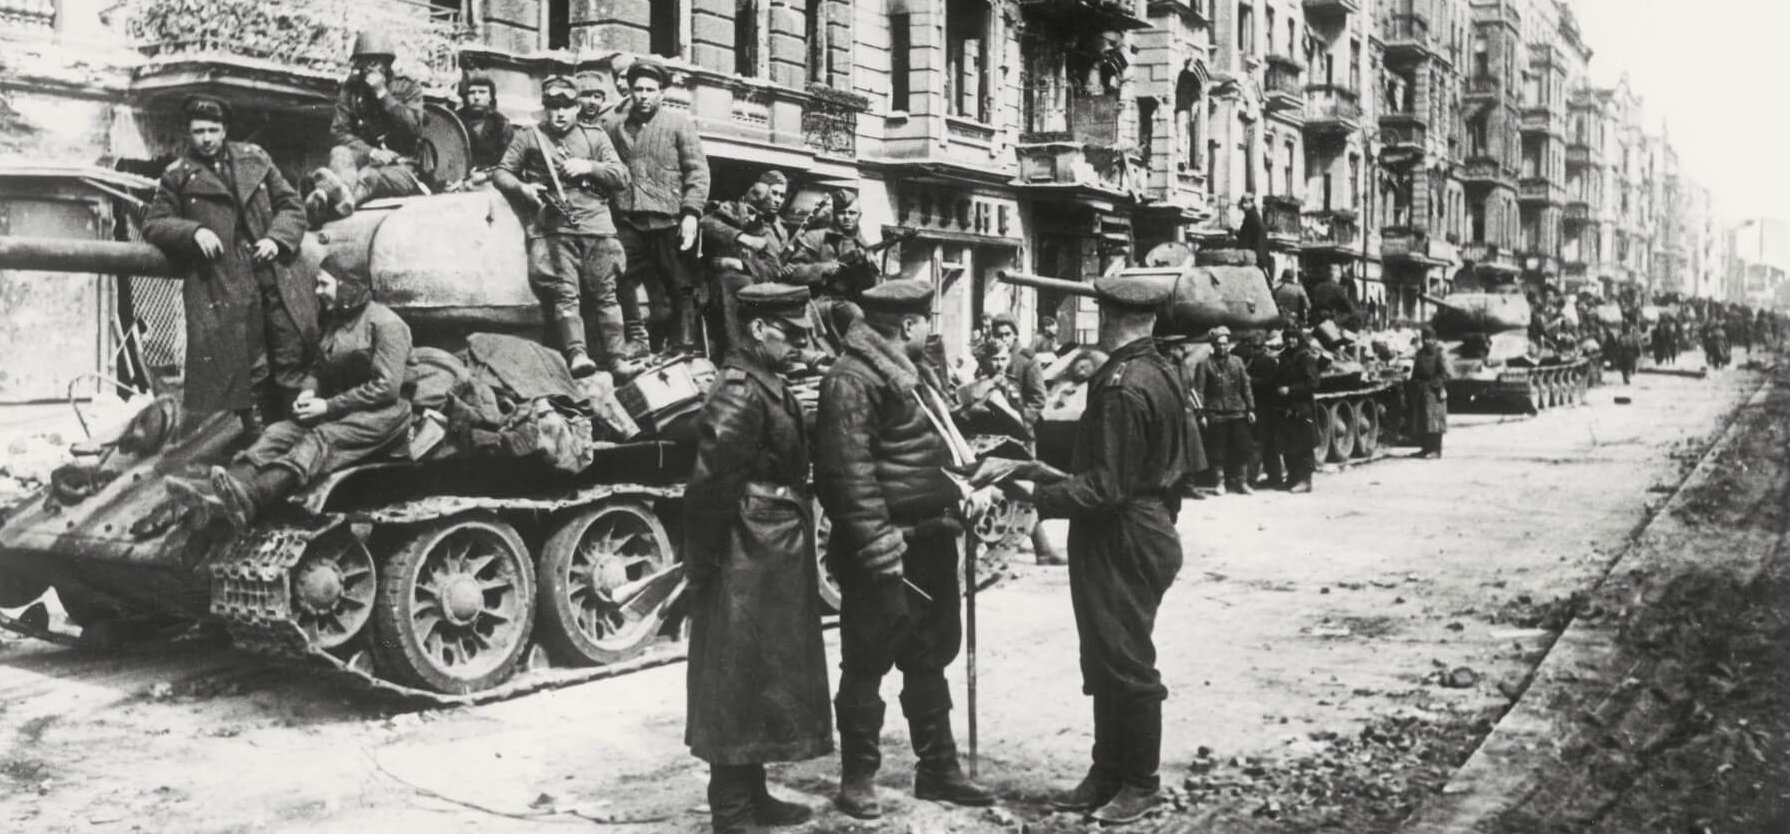 76 éve igázta le a Vörös Hadsereg Berlint – Íme 83 kép a csatáról, ami eldöntötte a II. világháborút!